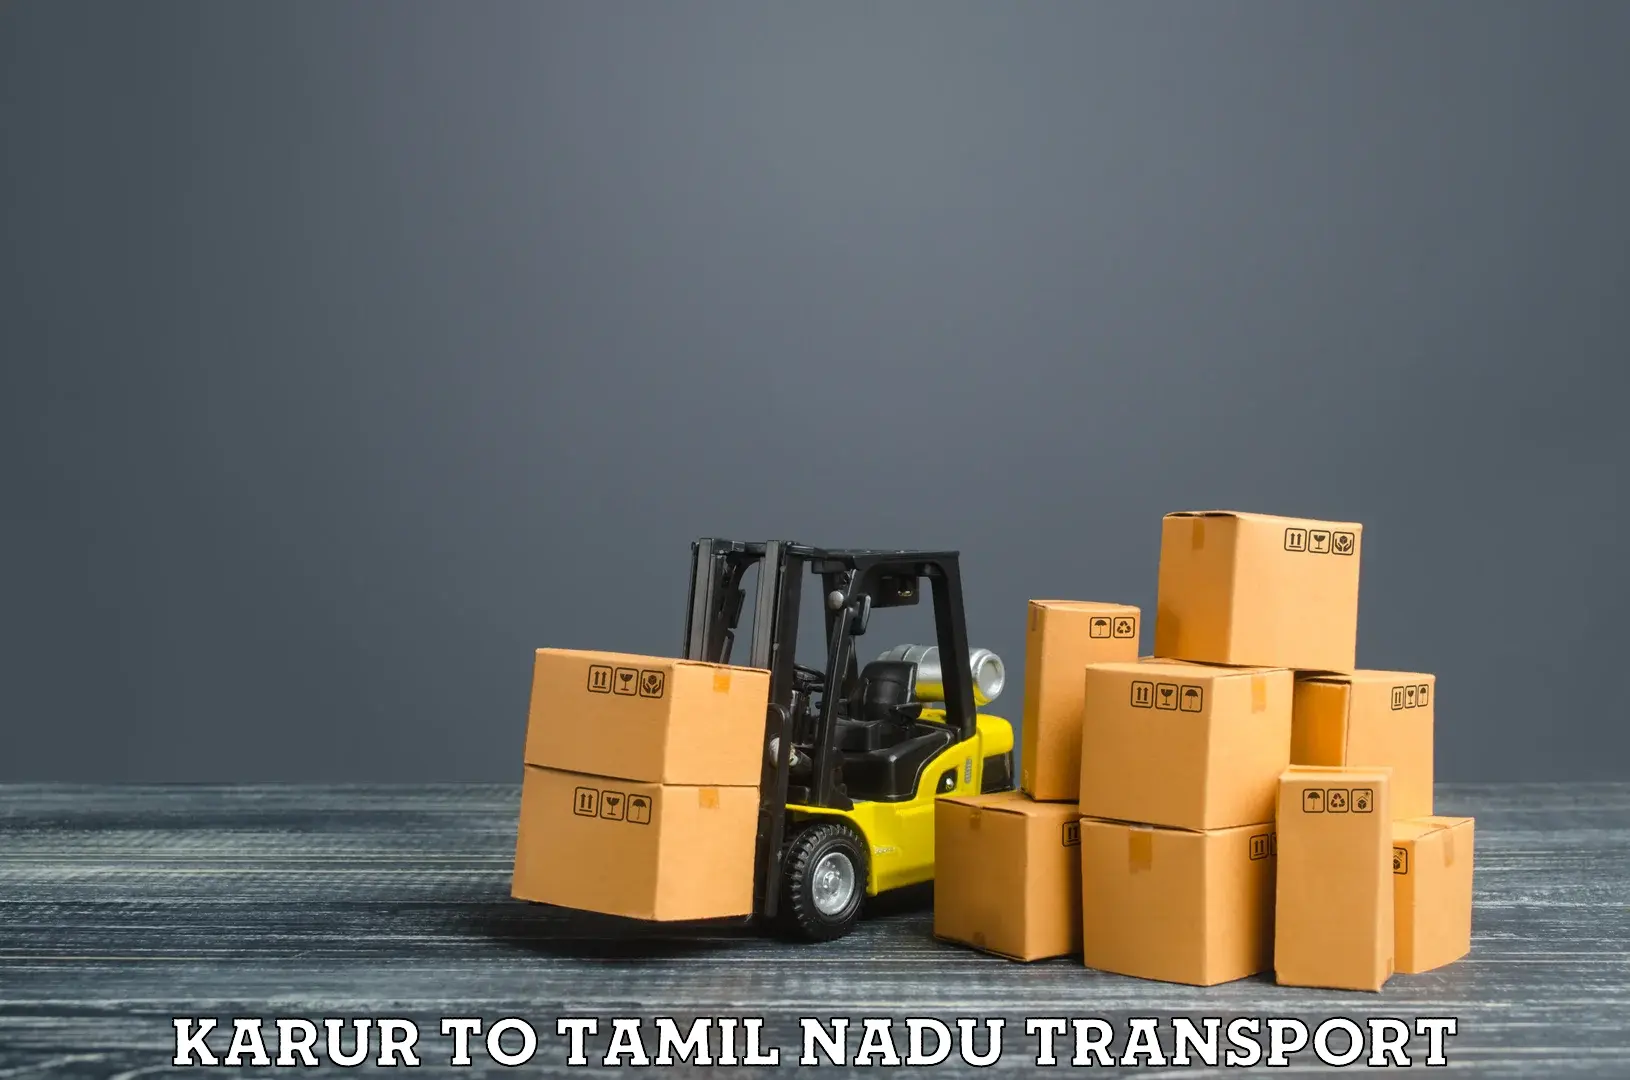 Lorry transport service Karur to Tiruchi